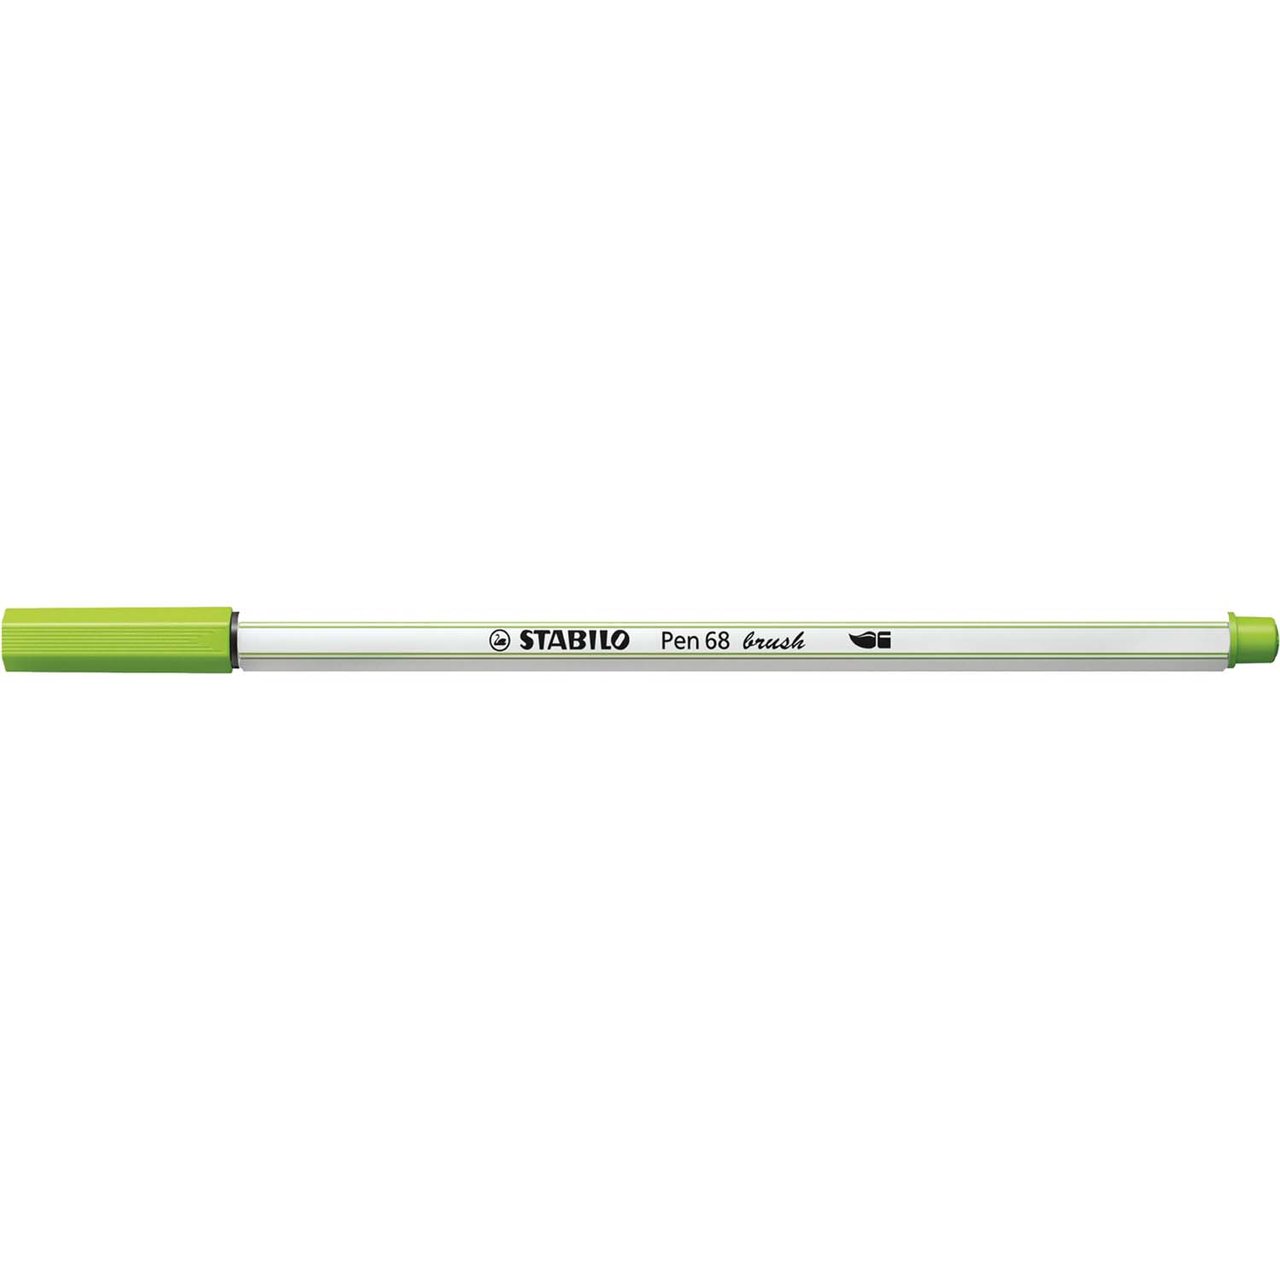 STABILO Pen 68 brush laubgrün